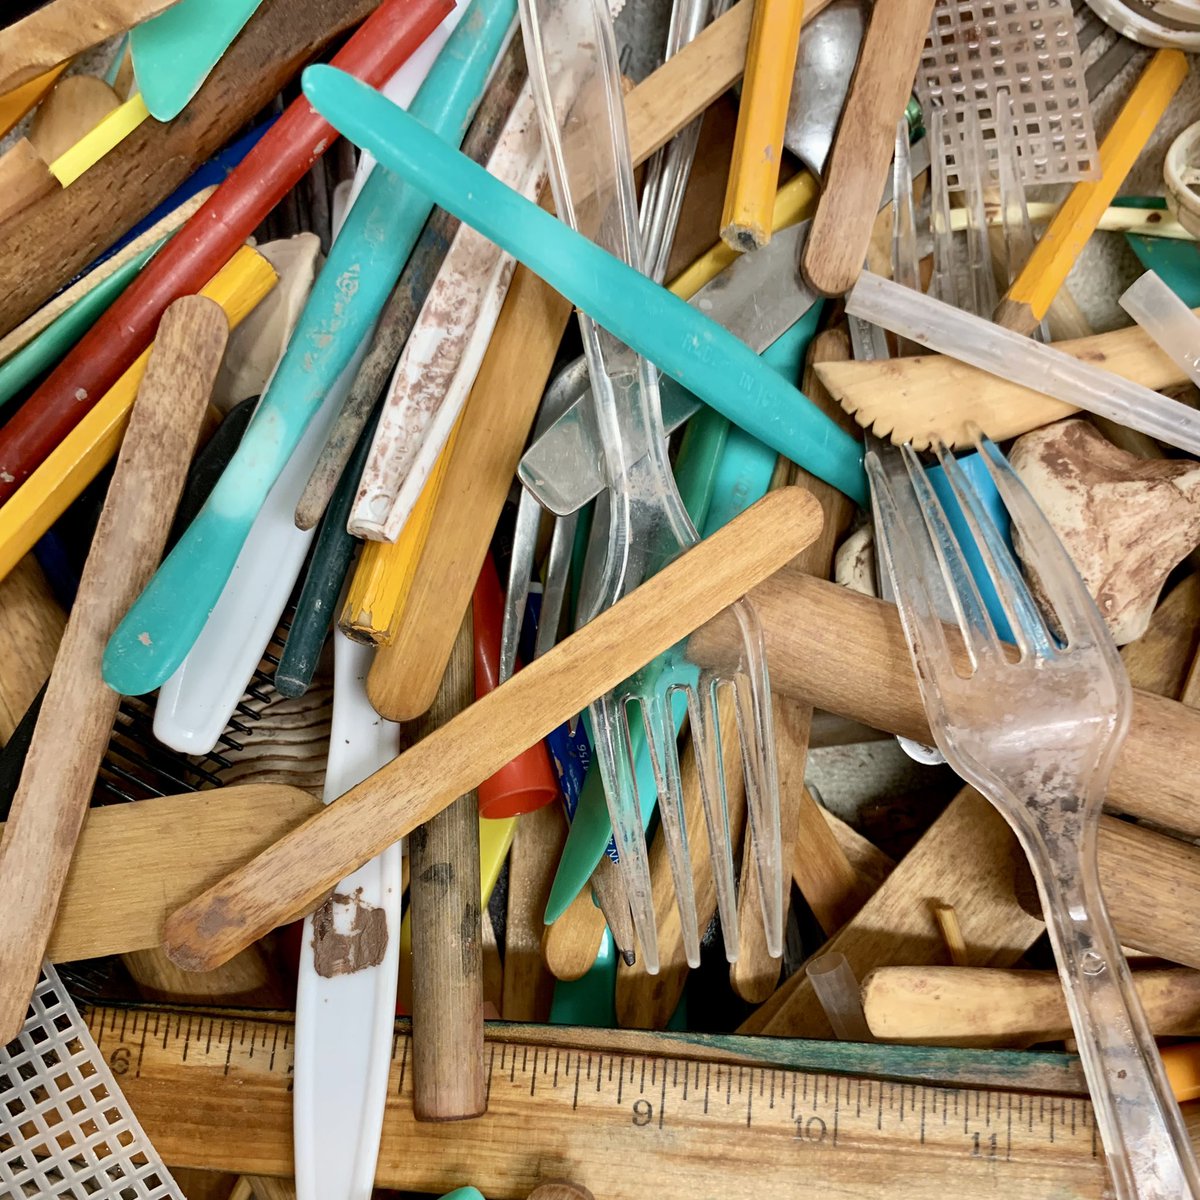 ¡Las herramientas están limpias y la arcilla está en el horno! A glasear nuestros proyectos de arcilla después de las vacaciones de primavera. #díasdearcilla #KWBpride @APSArts https://t.co/gBE0yg5lTP